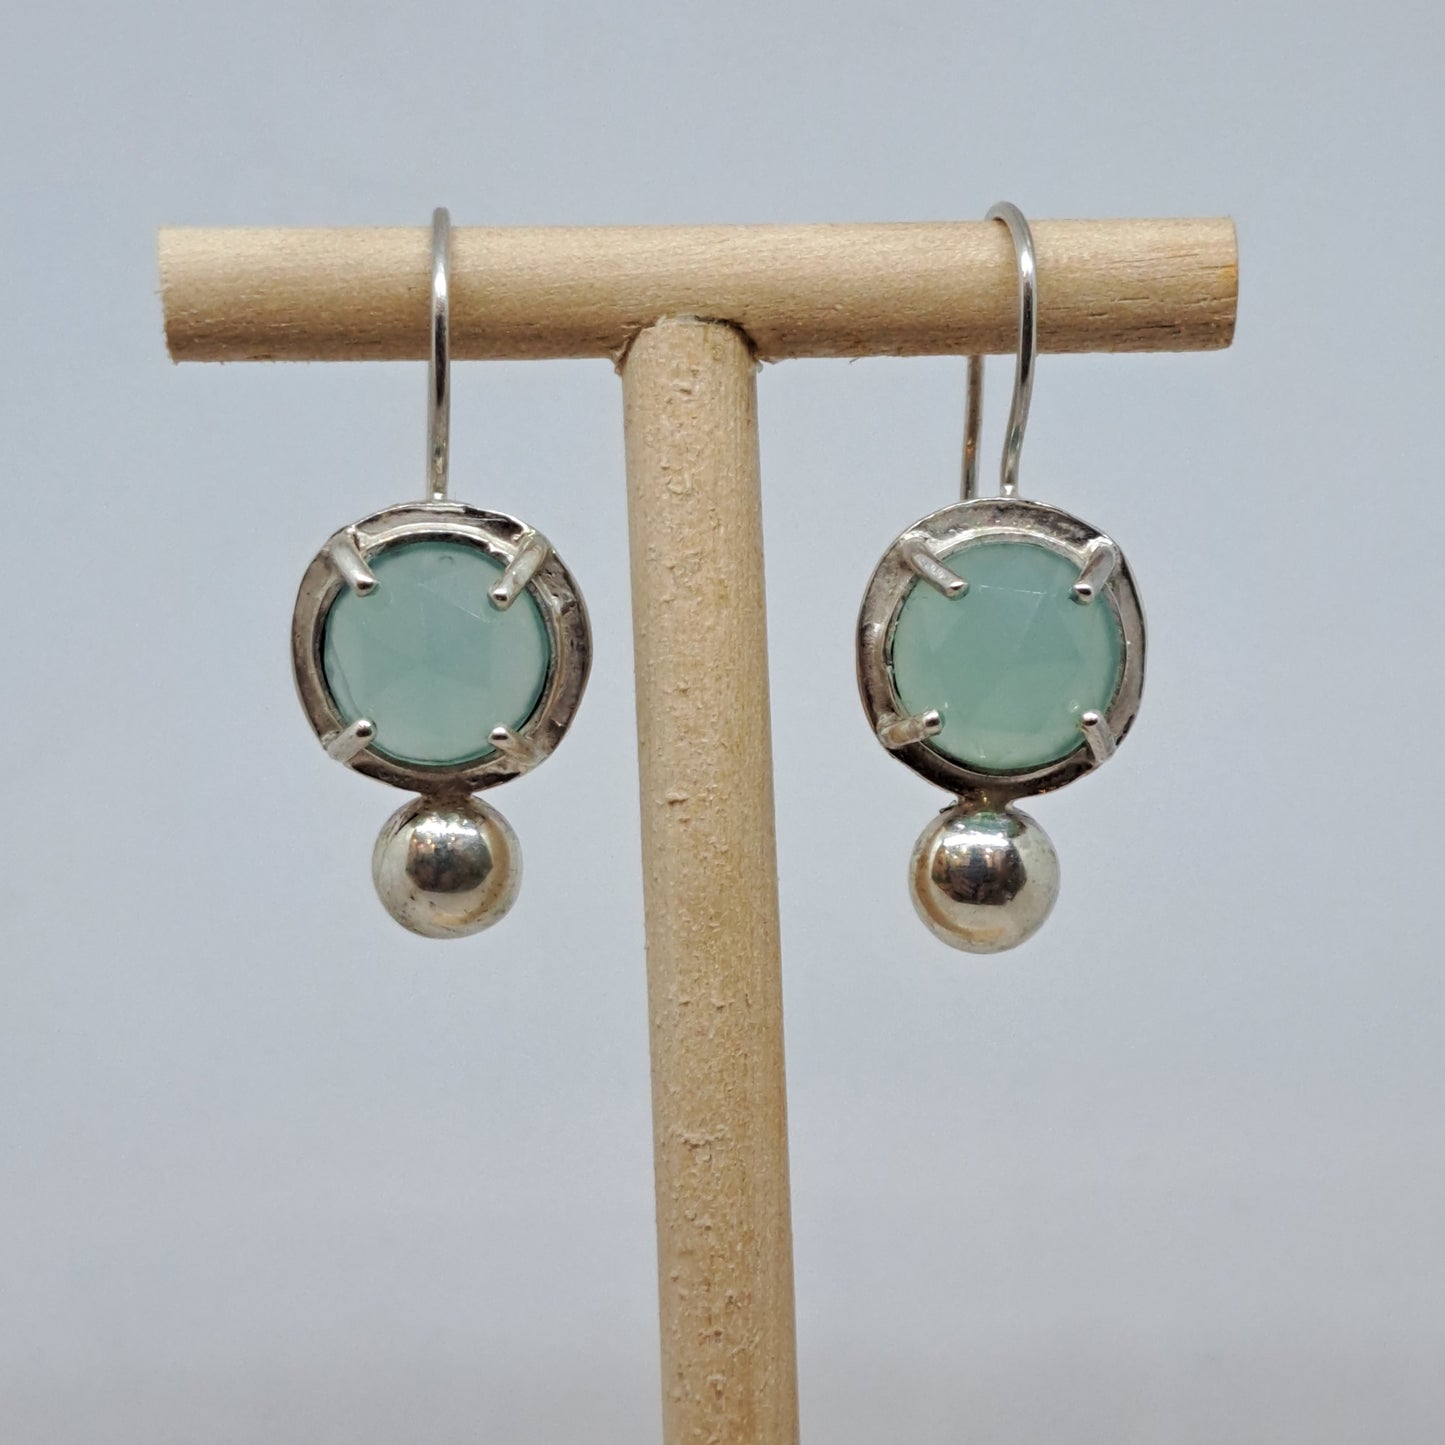 Aqua chalcedony earrings